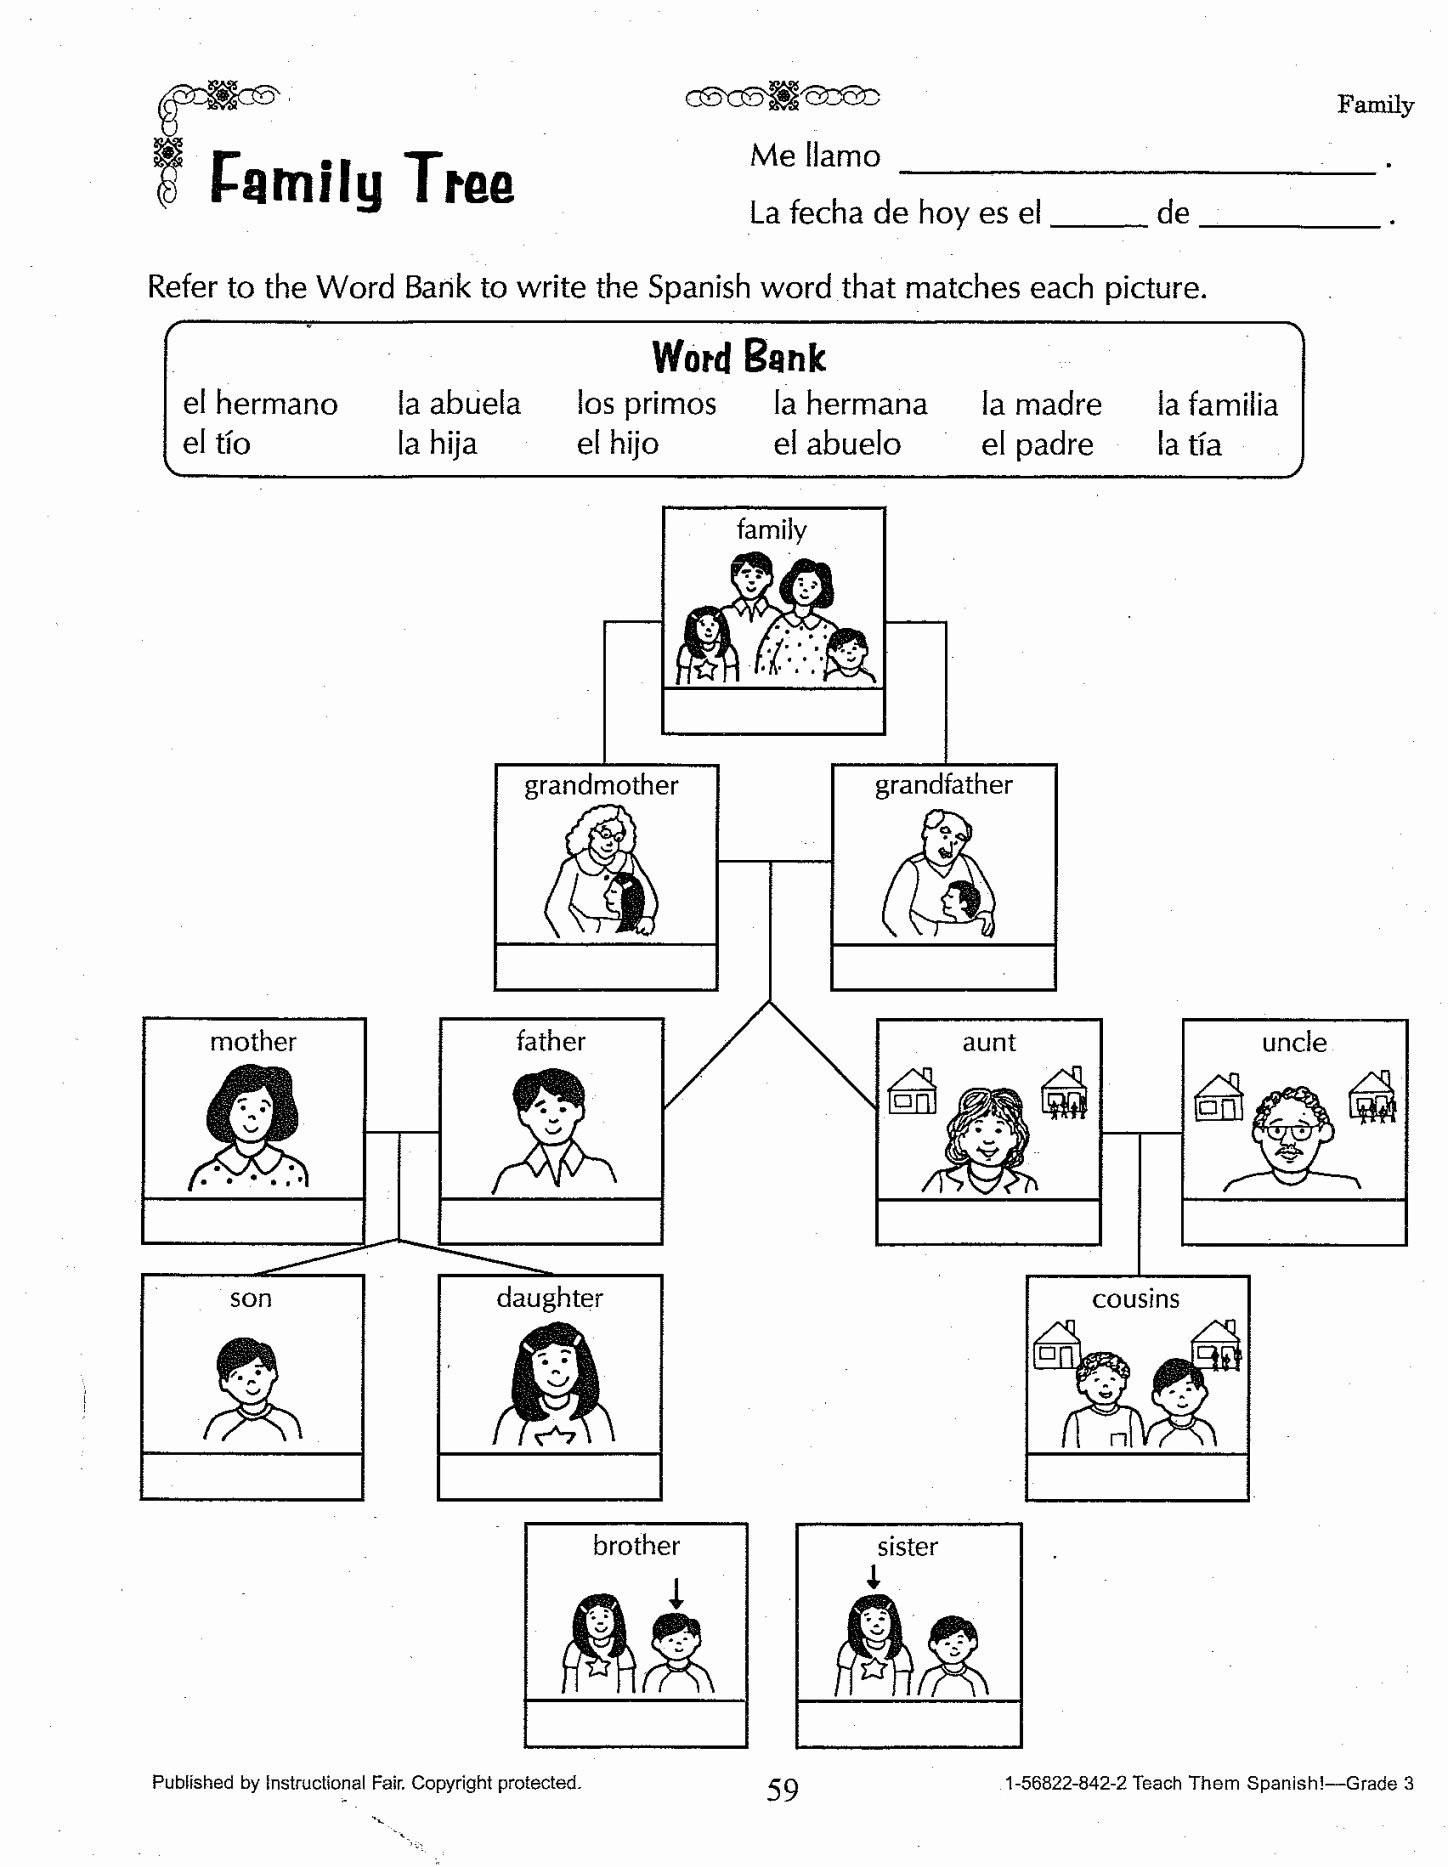 Spanish Family Tree Worksheet Elegant Family Tree Worksheet Printable